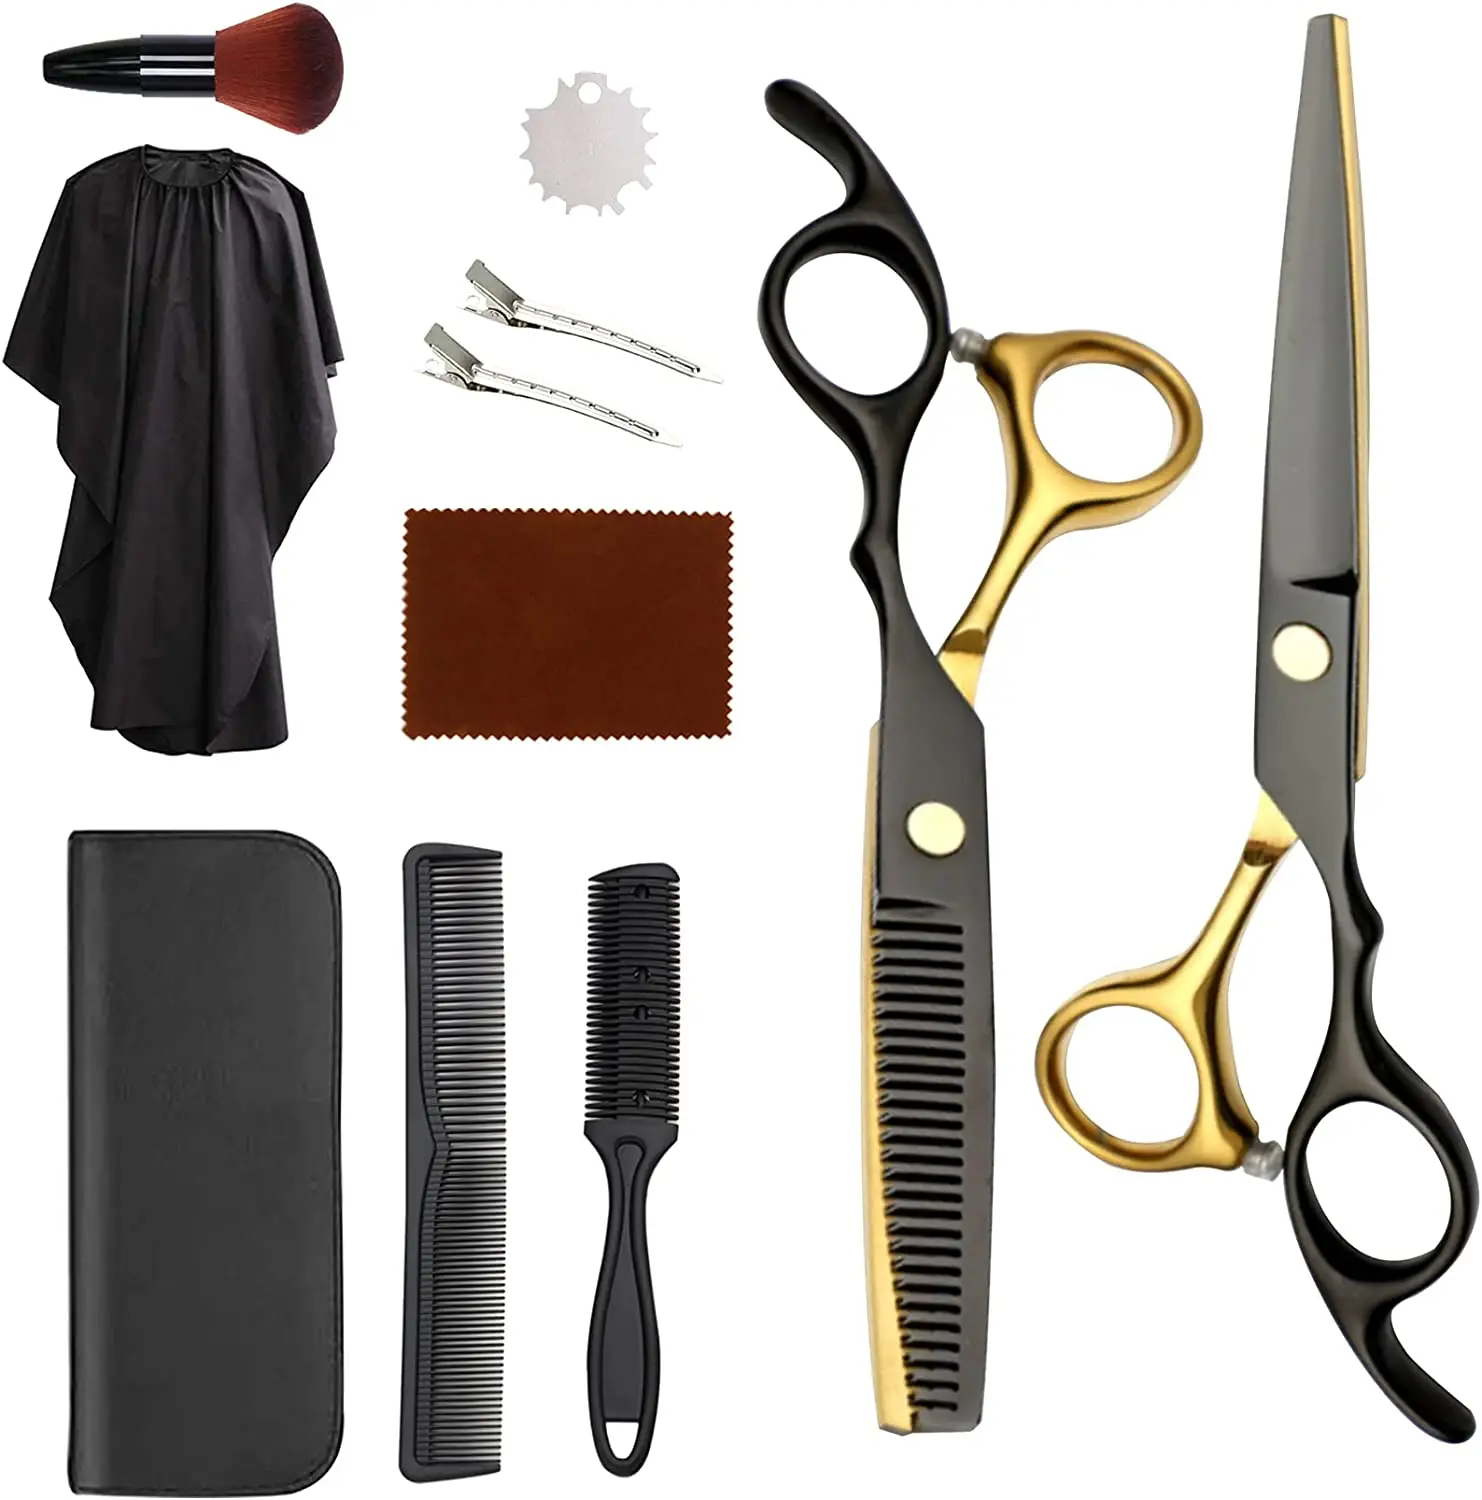 Tóc Cắt kéo tóc chuyên nghiệp cắt tóc Kit với kéo cắt tóc cho thợ cắt tóc, salon, nhà